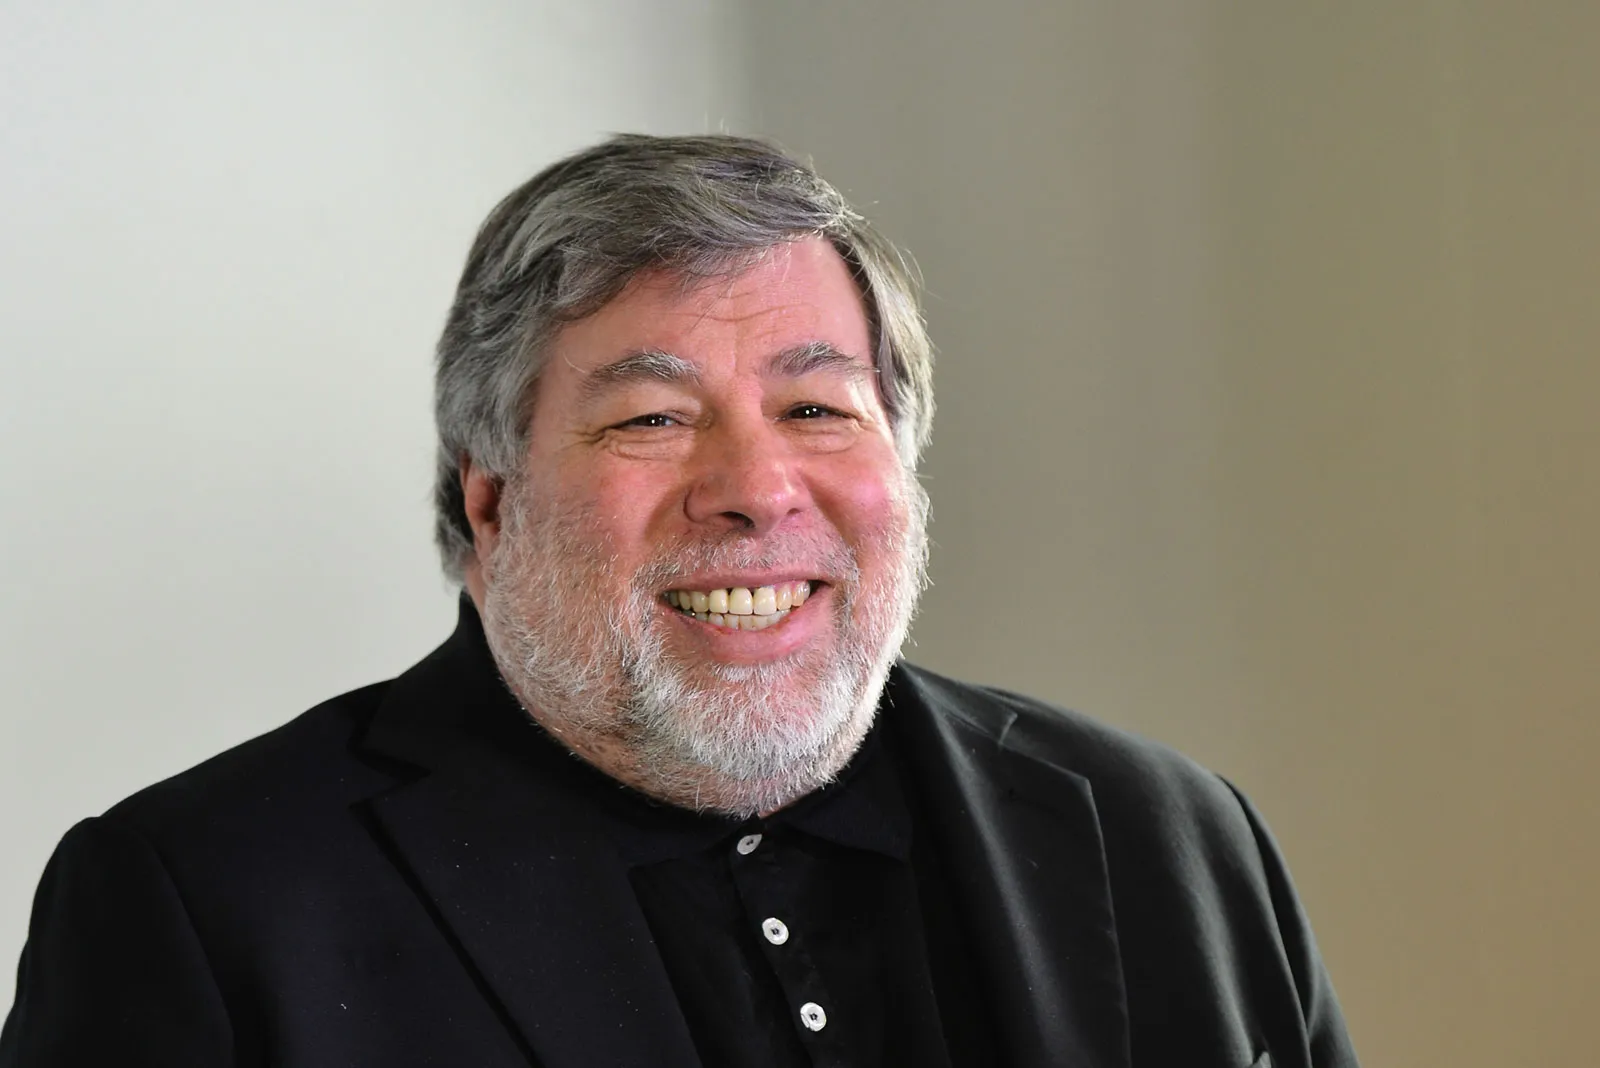 Steve Wozniak Biography